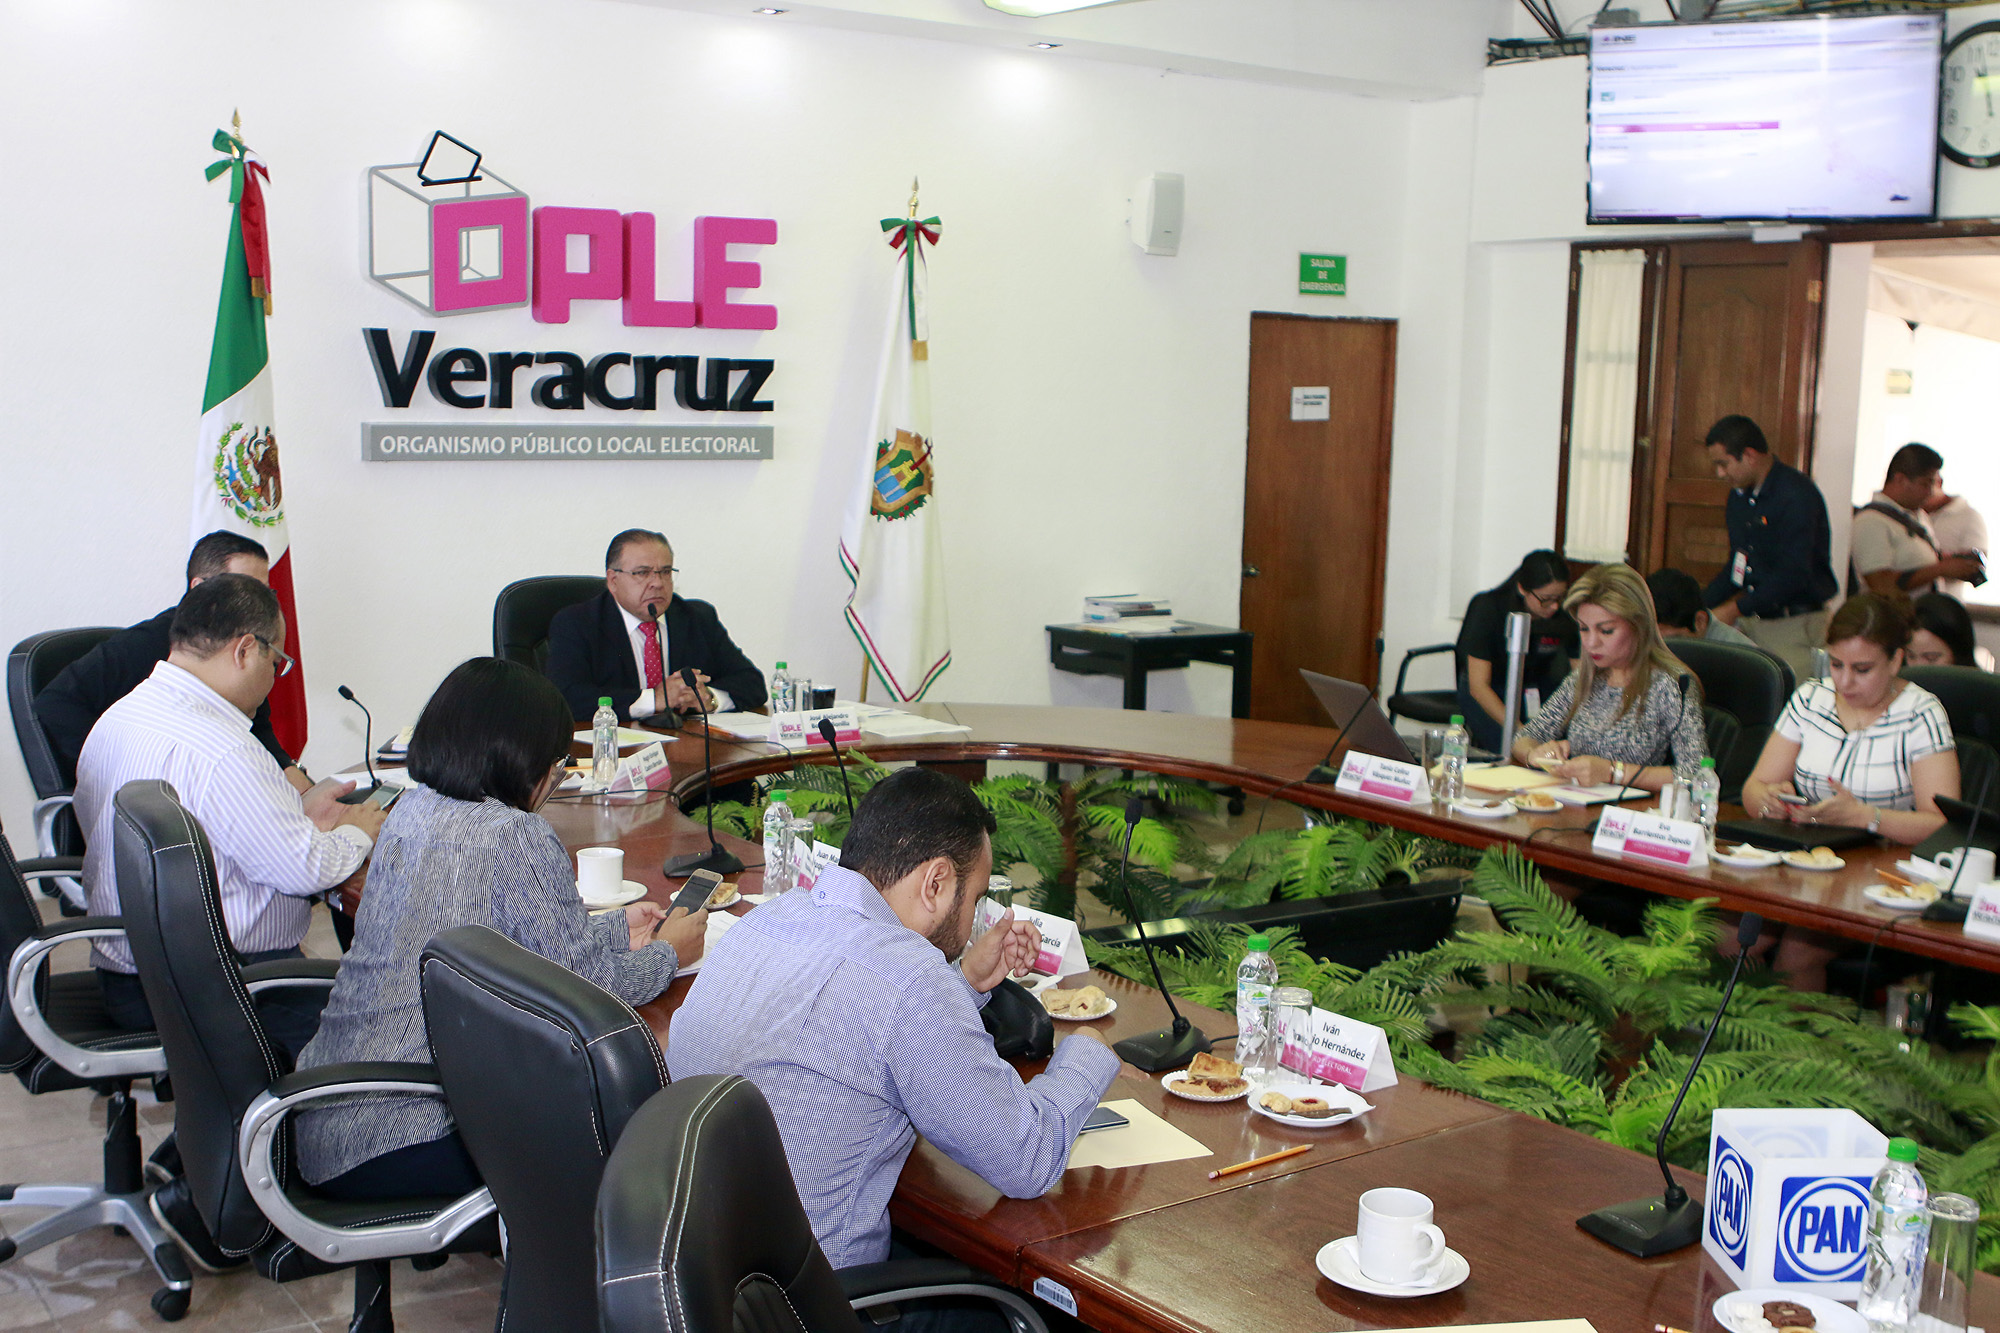 Organismo Público Local Electoral de Veracruz